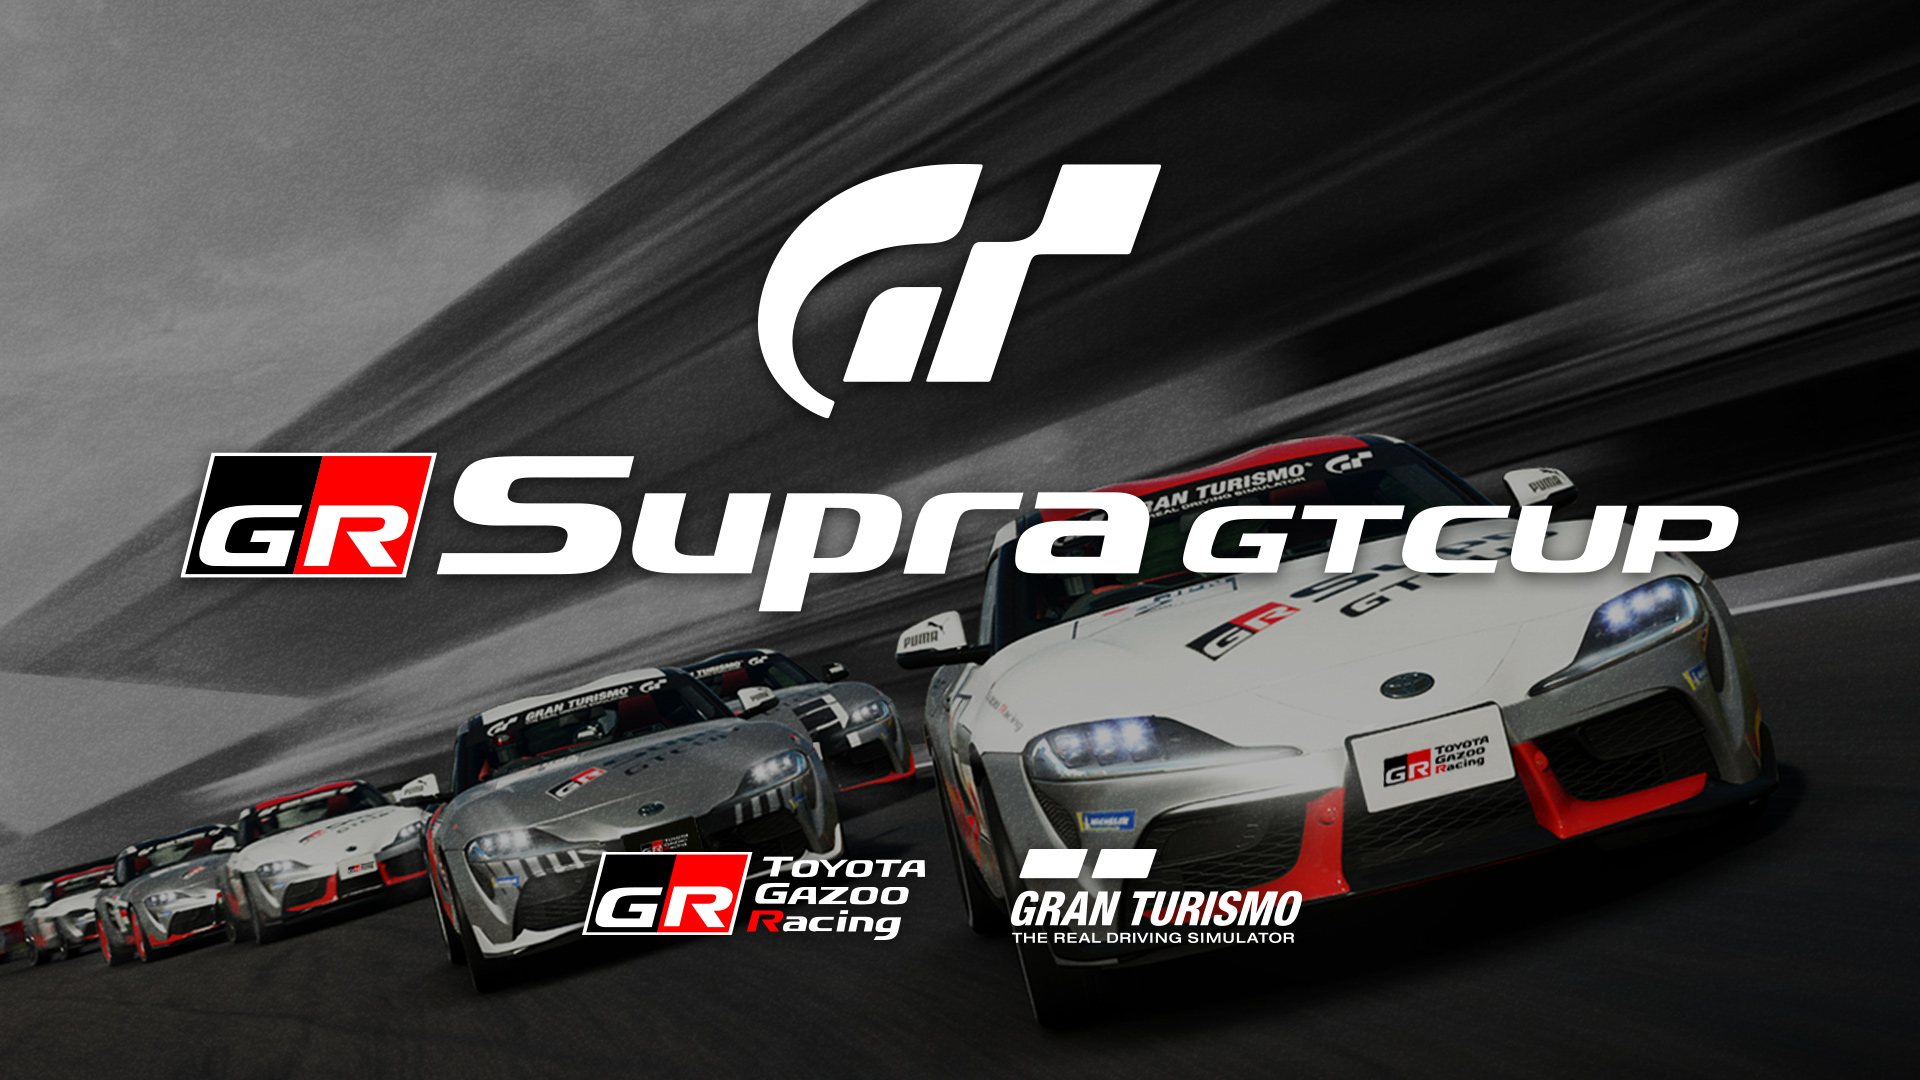 Championnats en ligne sur Gran Turismo